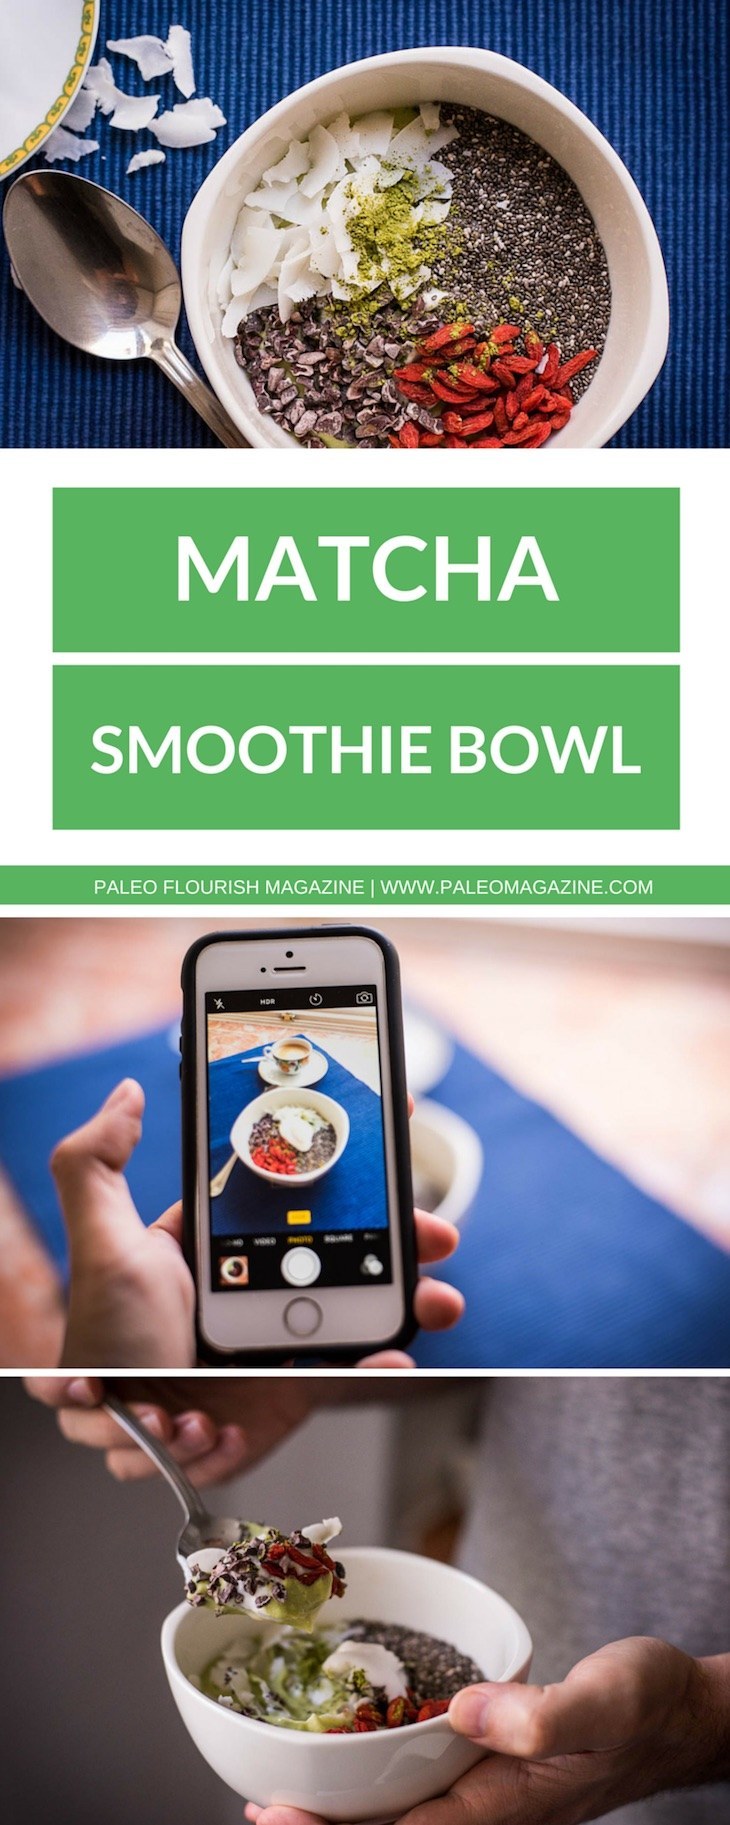 Matcha Ketogenic Smoothie Bowl Recipe #paleo #keto #recipe https://ketosummit.com/matcha-ketogenic-smoothie-bowl-recipe-paleo-keto-dairy-free